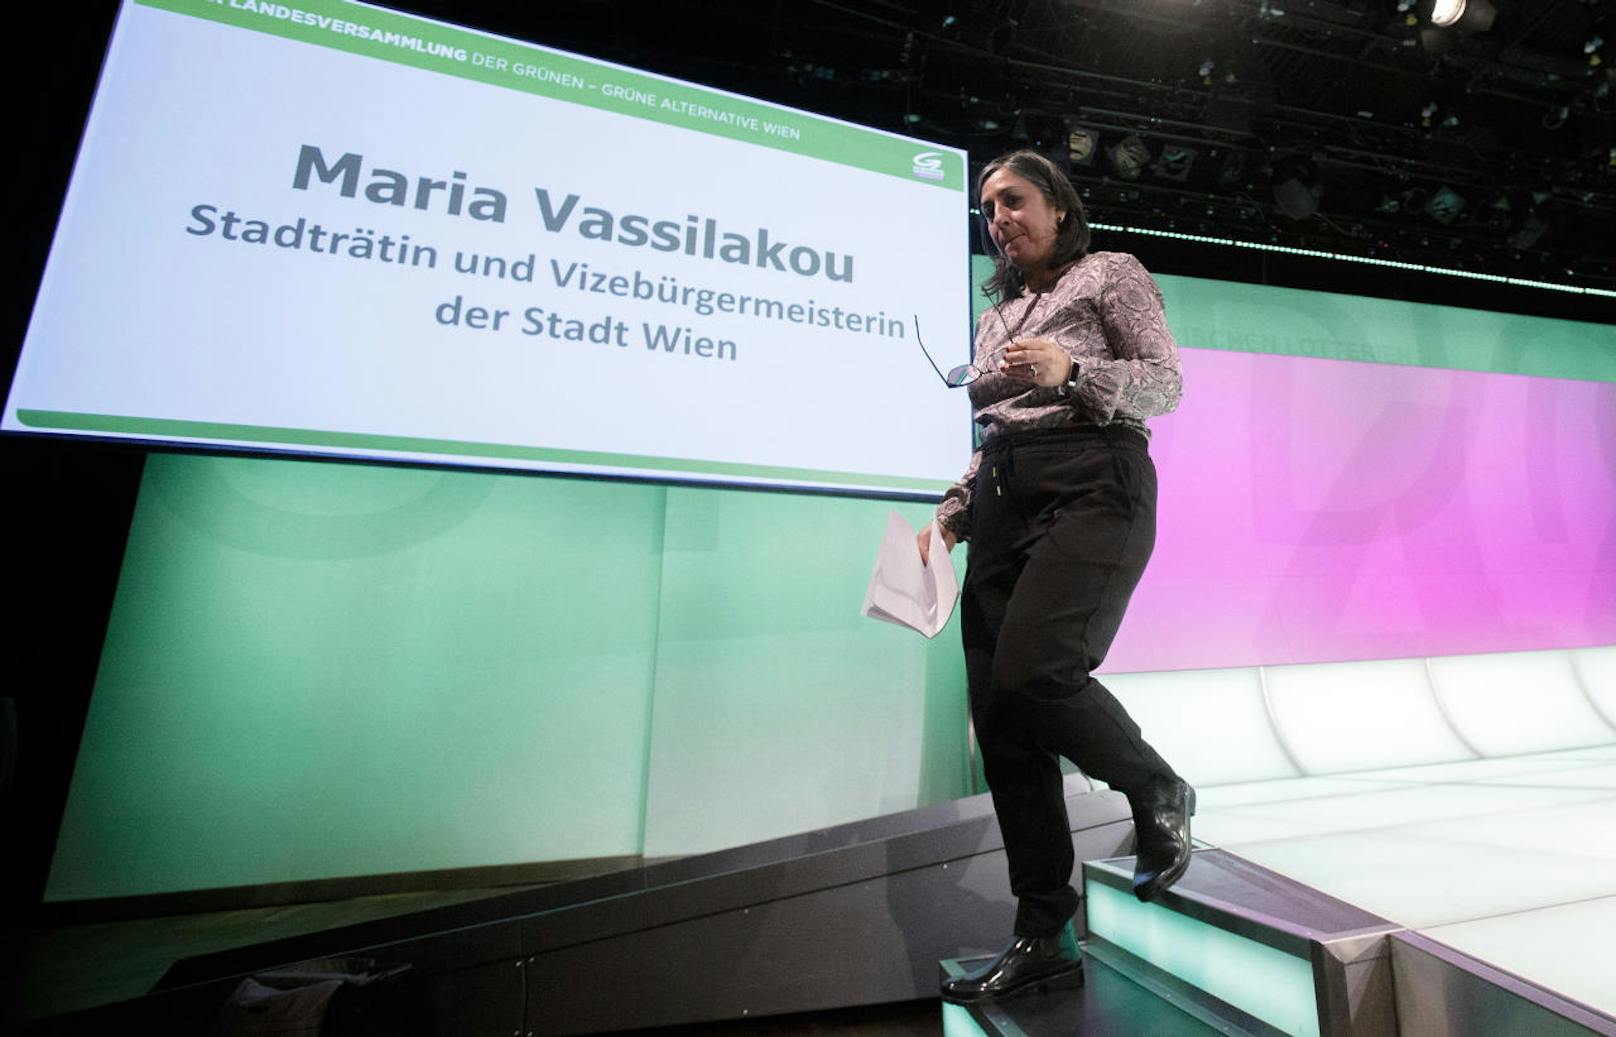 <b>November: Wiener Grüne putschen gegen Vizebürgermeisterin Maria Vassilakou
</b>Eine grüne Gruppierung forderte den Rücktritt von Vassilakou. Doch sie ließ sich davon nicht beeindrucken.  <a href="https://www.heute.at/oesterreich/wien/story/Gruene-stellen-Antrag-auf-Ruecktritt-von-Vassilakou-51572795">Hier geht's zur Geschichte</a>